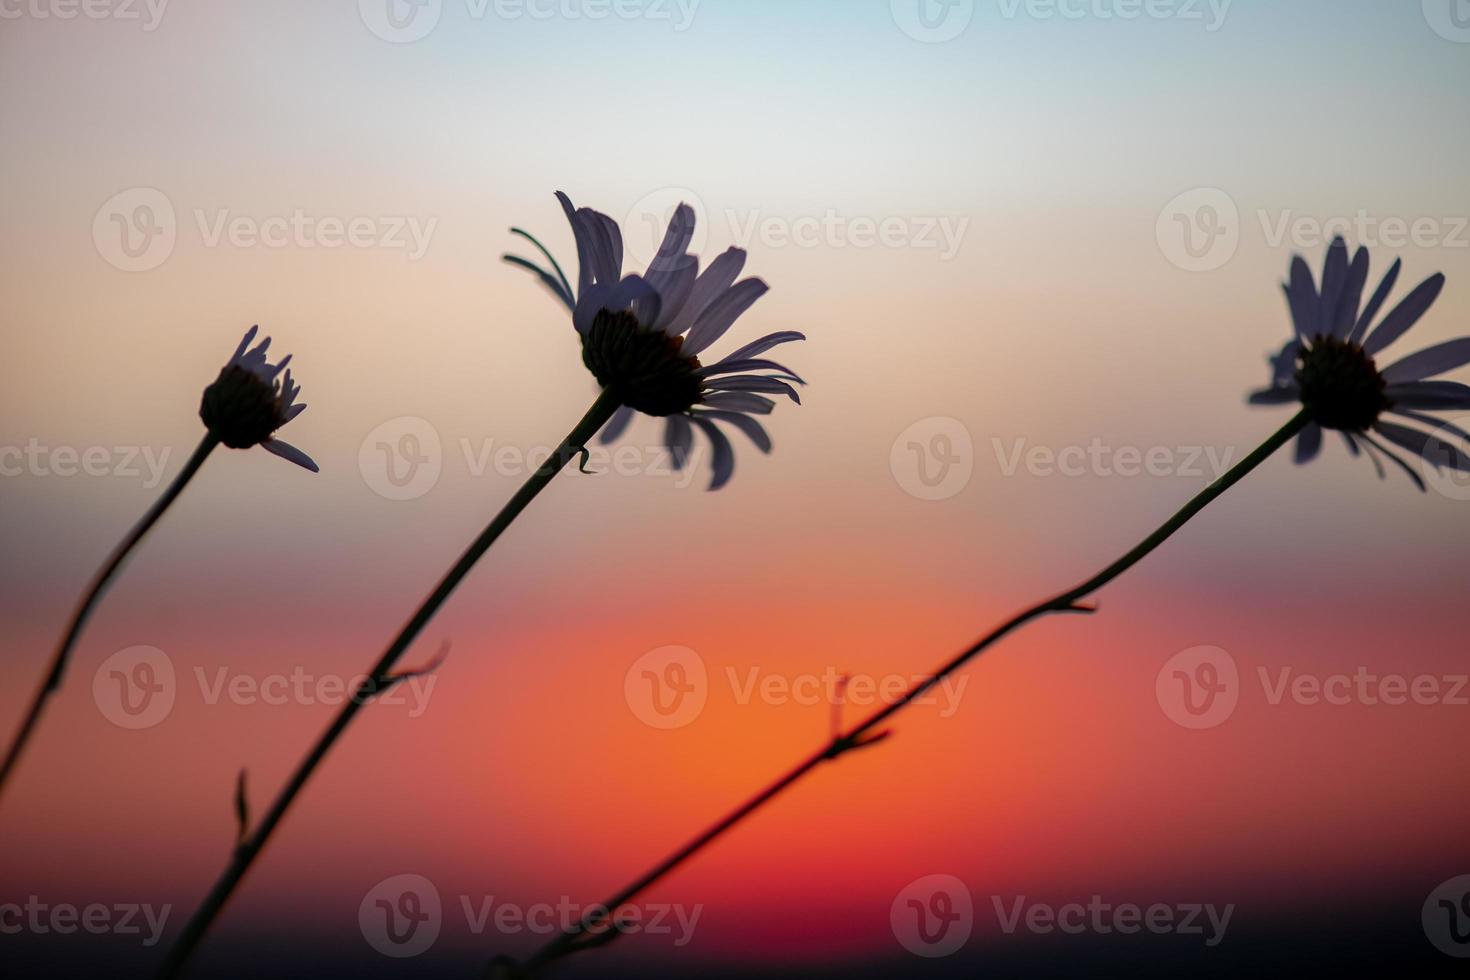 un hermoso prado con flores silvestres y plantas en el fondo de un cielo brillante al atardecer. Bokeh. siluetas de hierba y flores silvestres. fondo de naturaleza en verano. foto